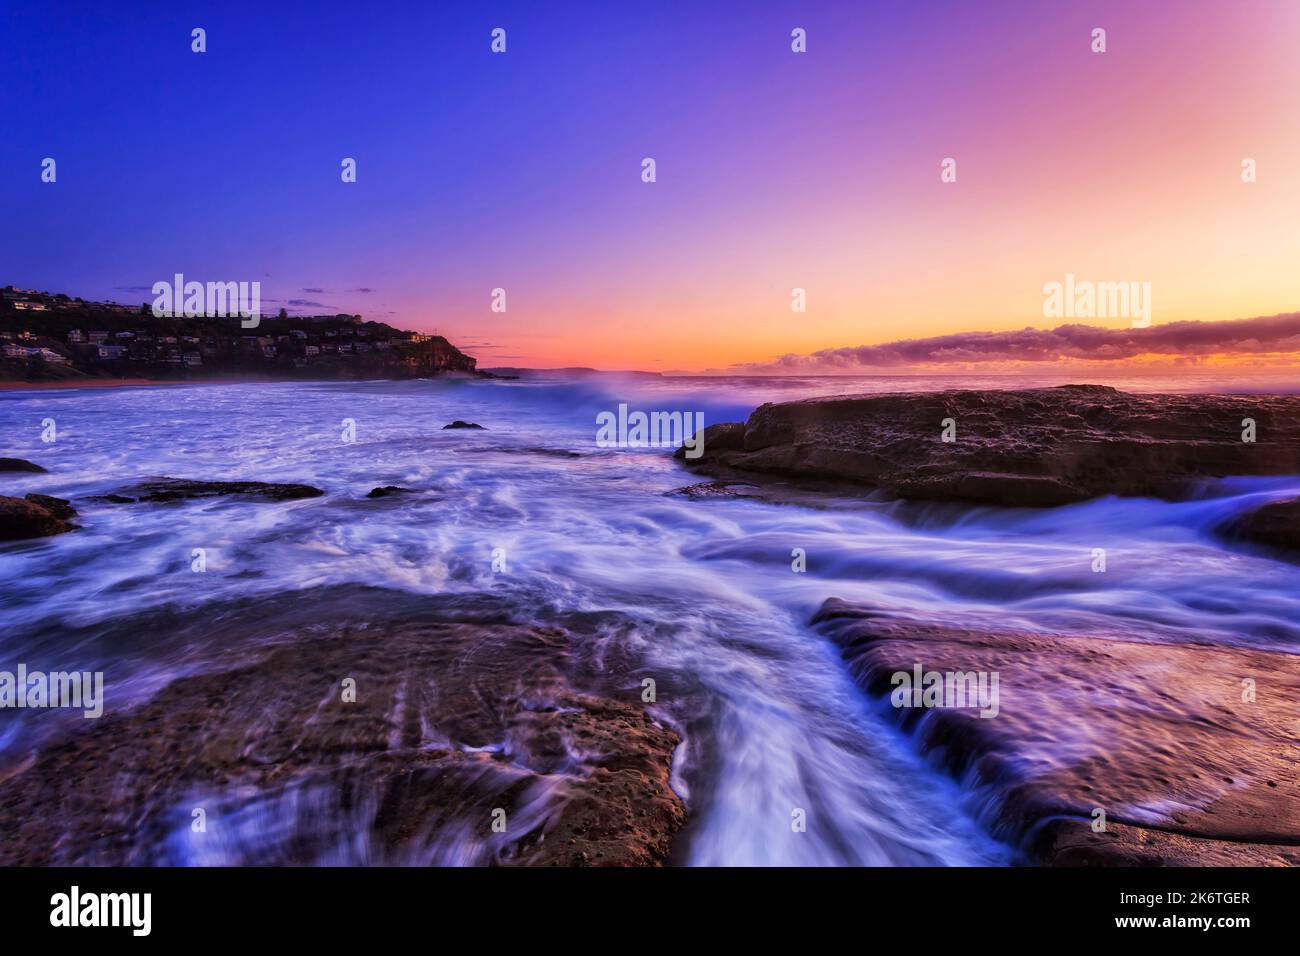 Landschaftlich schöner Sonnenaufgang an der Pazifikküste Australiens - Sydney Northern Beaches Whale Beach und Little Head. Stockfoto